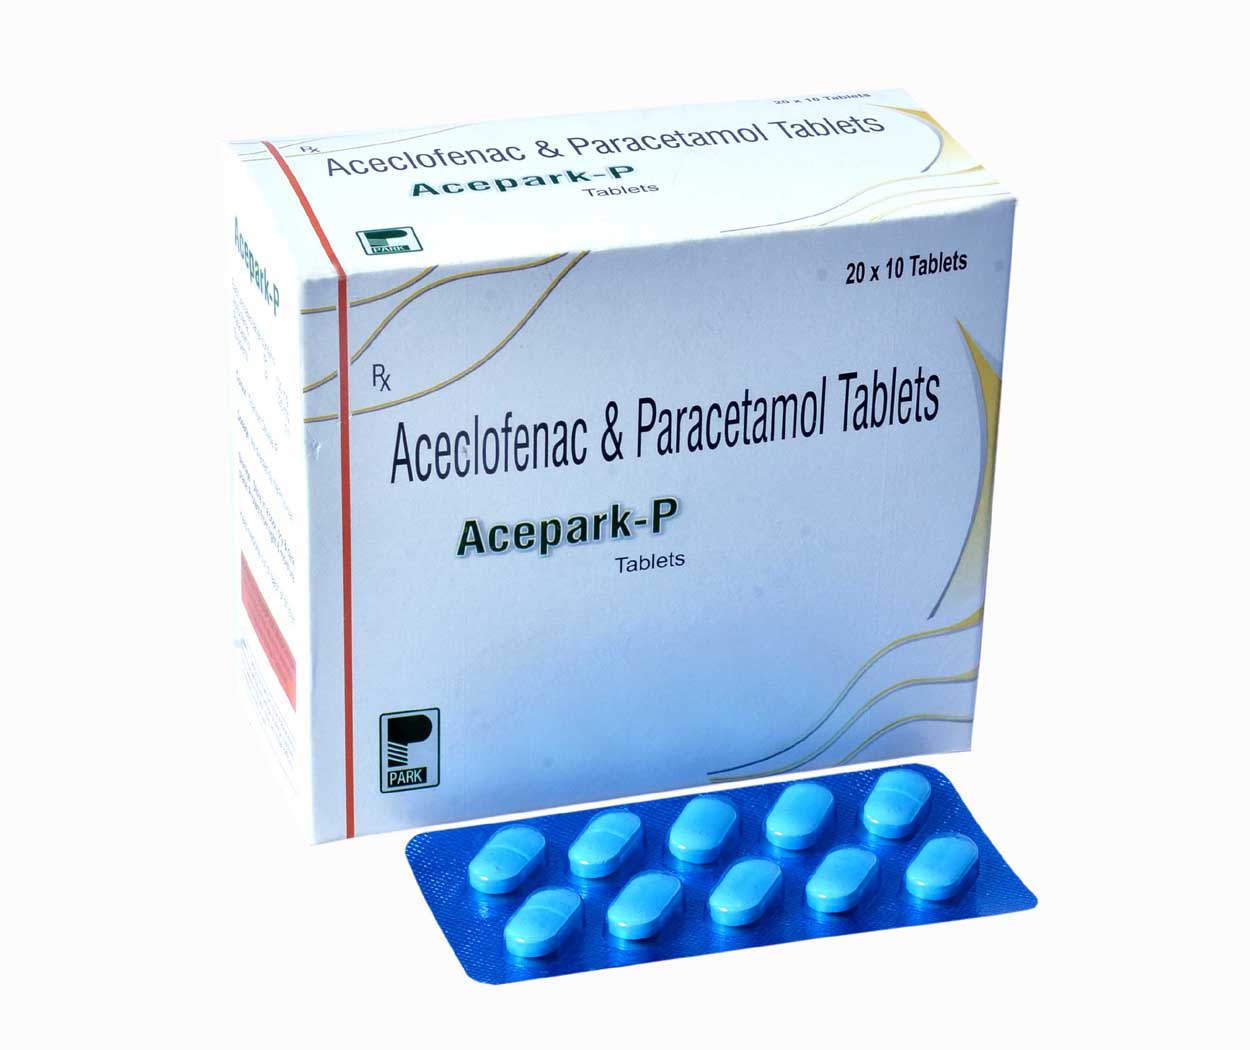 Product Name: Acepark P, Compositions of Acepark P are Aceclofenac & Paracetamol Tablets  - Park Pharmaceuticals